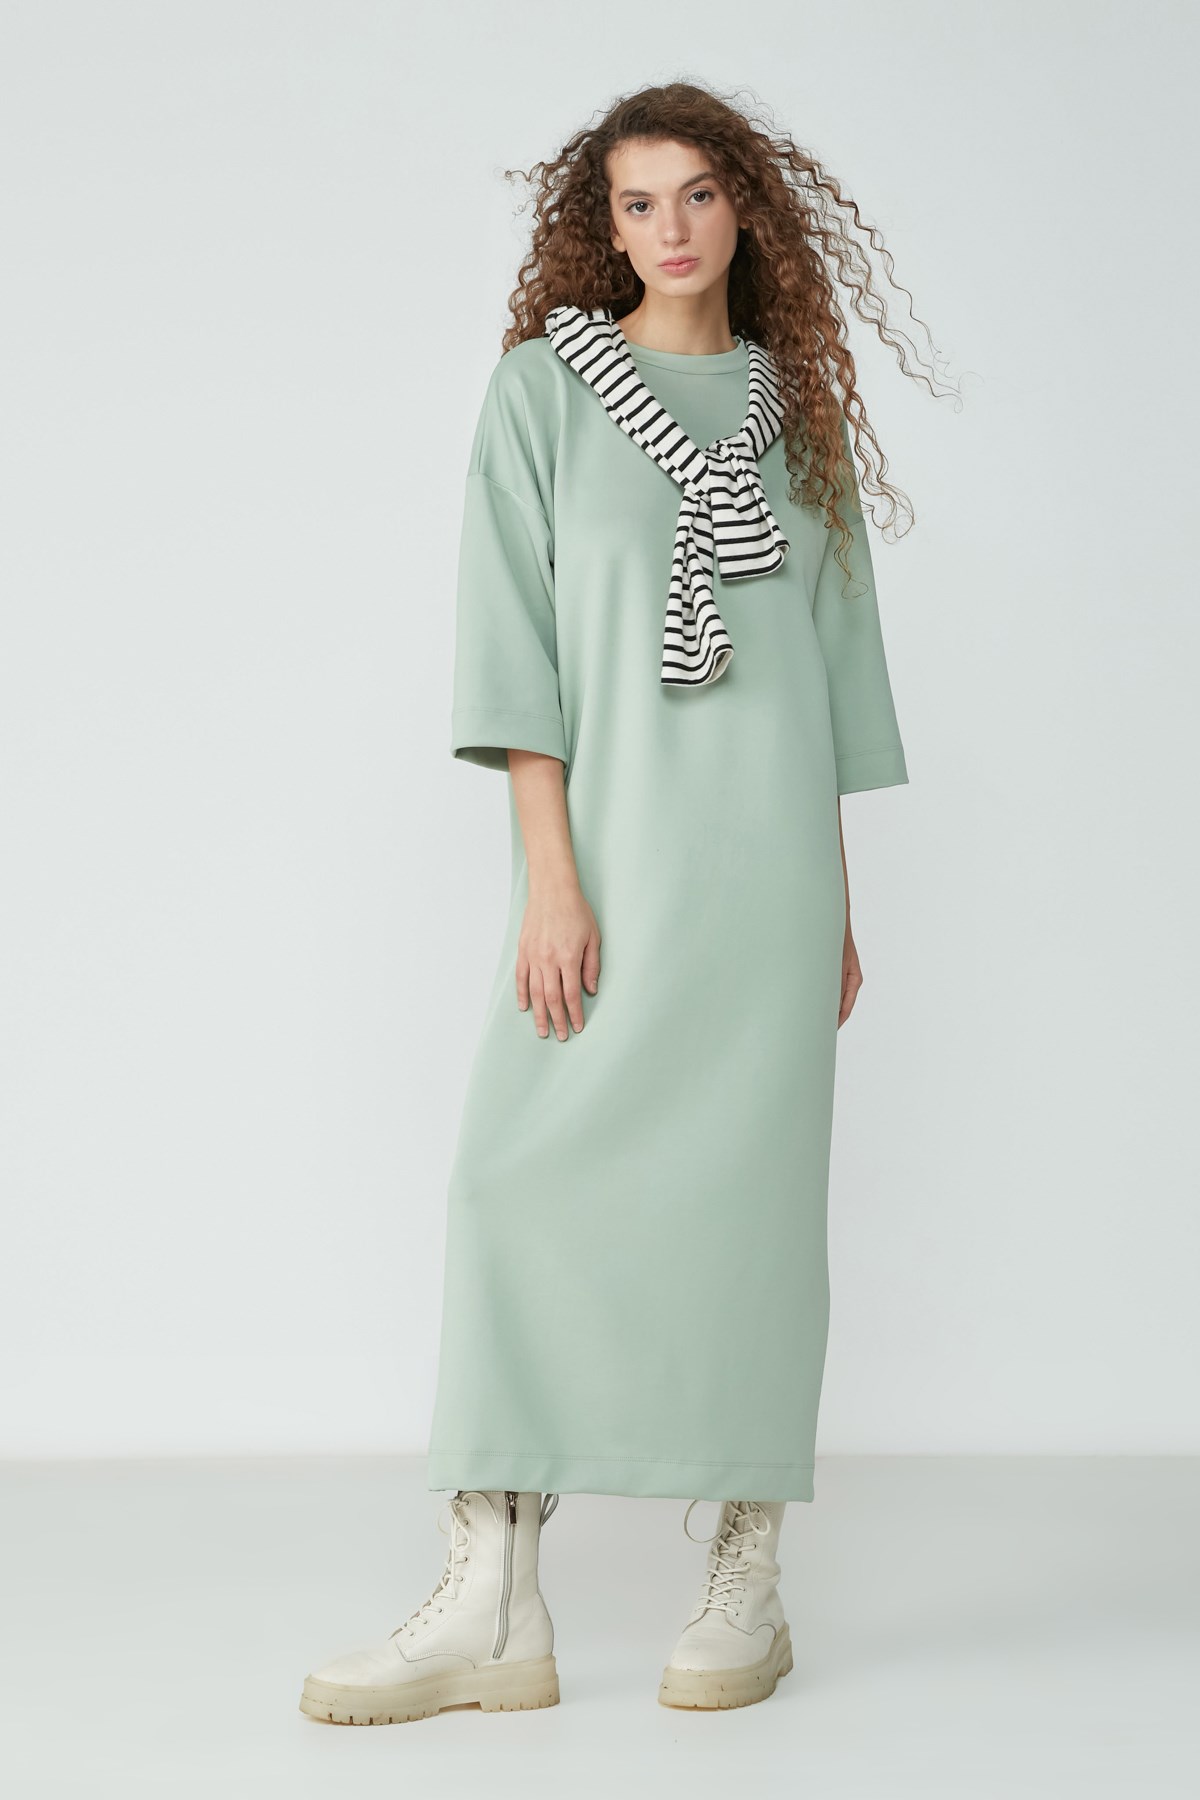 C&City Sıfır Yaka Yarım Kol Elbise Tunik 9100 Mint Yeşil